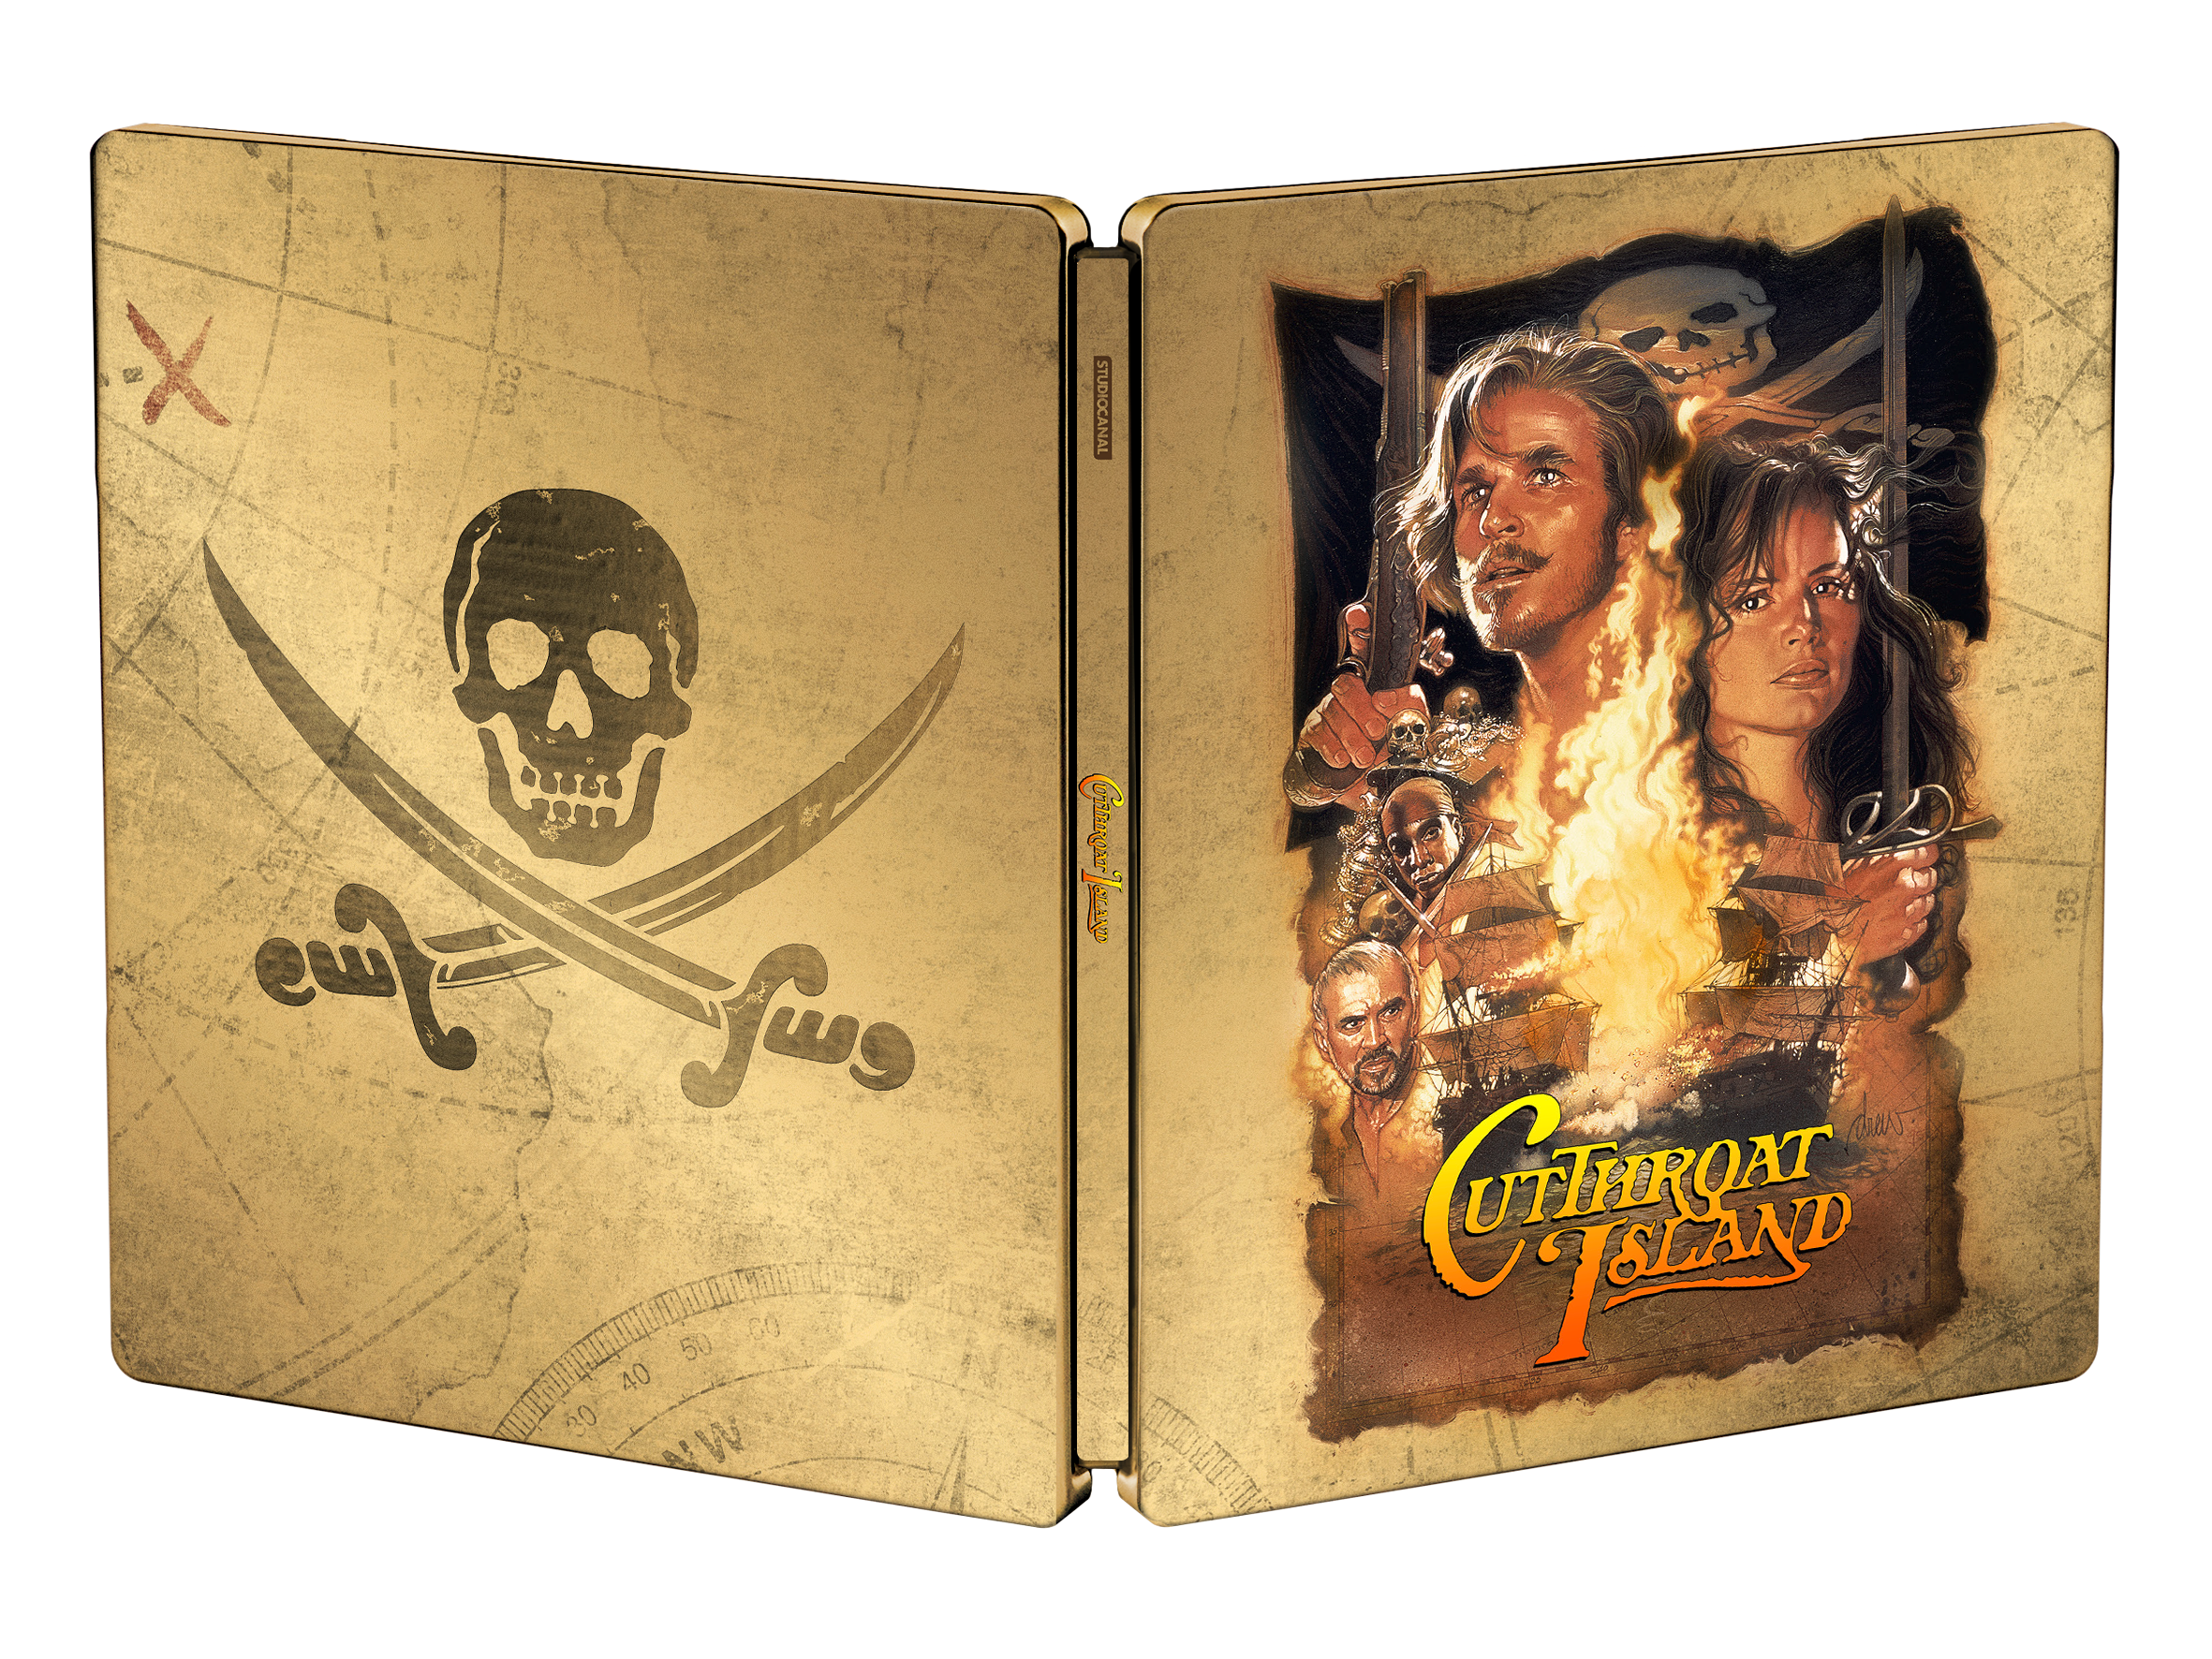 Die Piratenbraut - Home Entertainment Cover 4k Restauriert